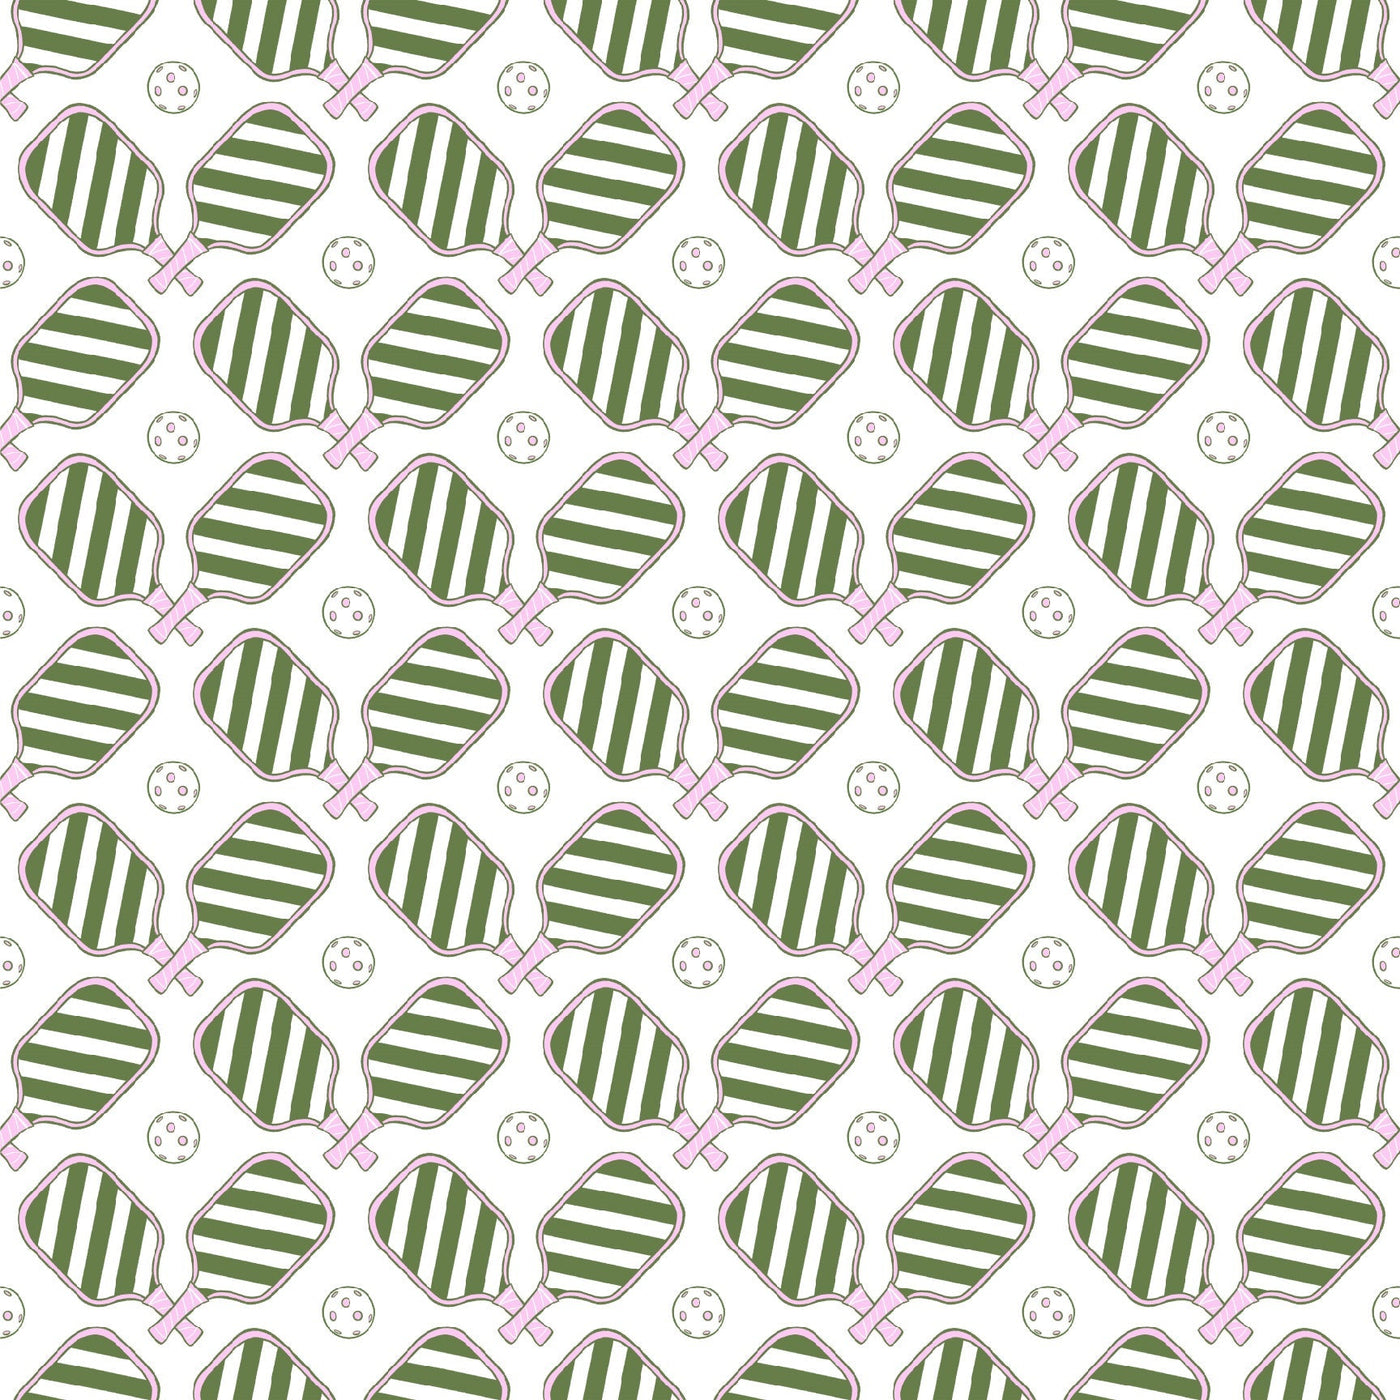 Peel & Stick Wallpaper 24"x 48" / Green Pickleball Peel & Stick Wallpaper Katie Kime